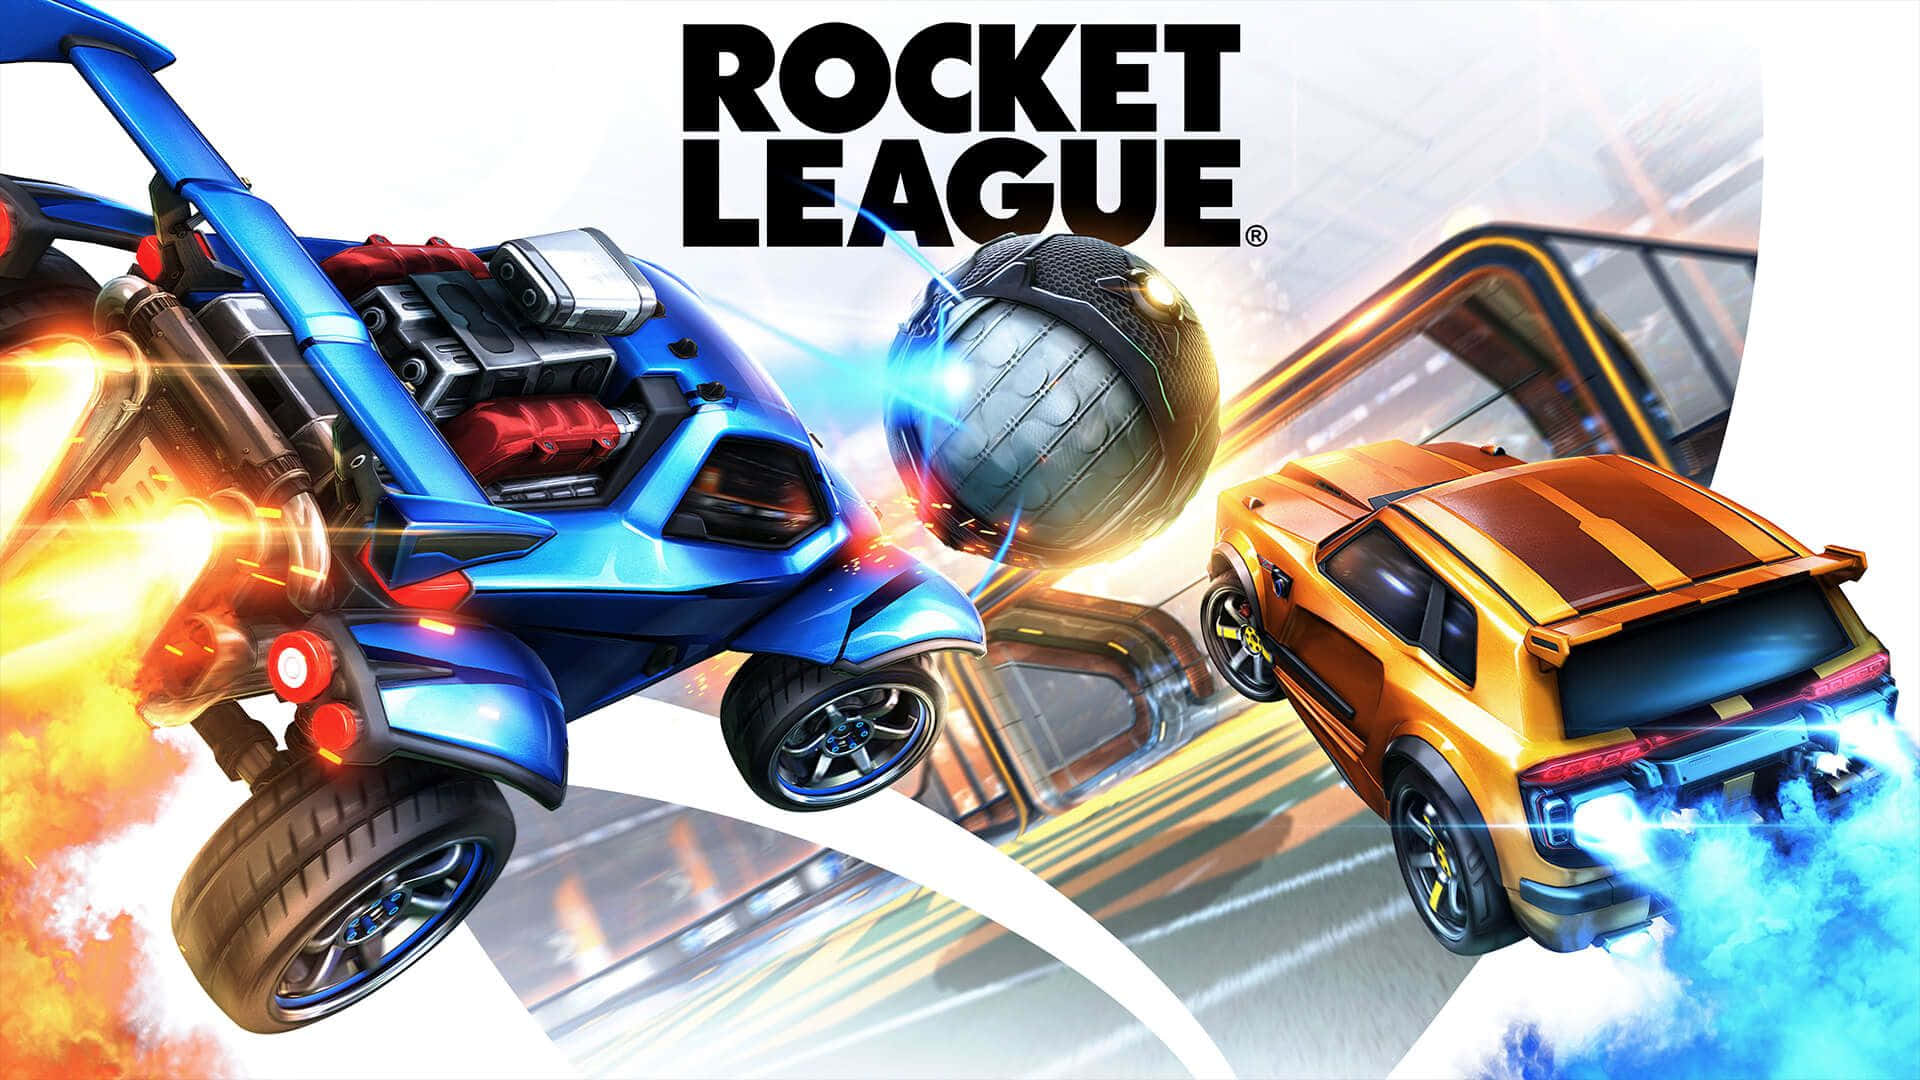 Rocketleague - En Fotorealistisk Fusion Av Racing Och Fotboll.